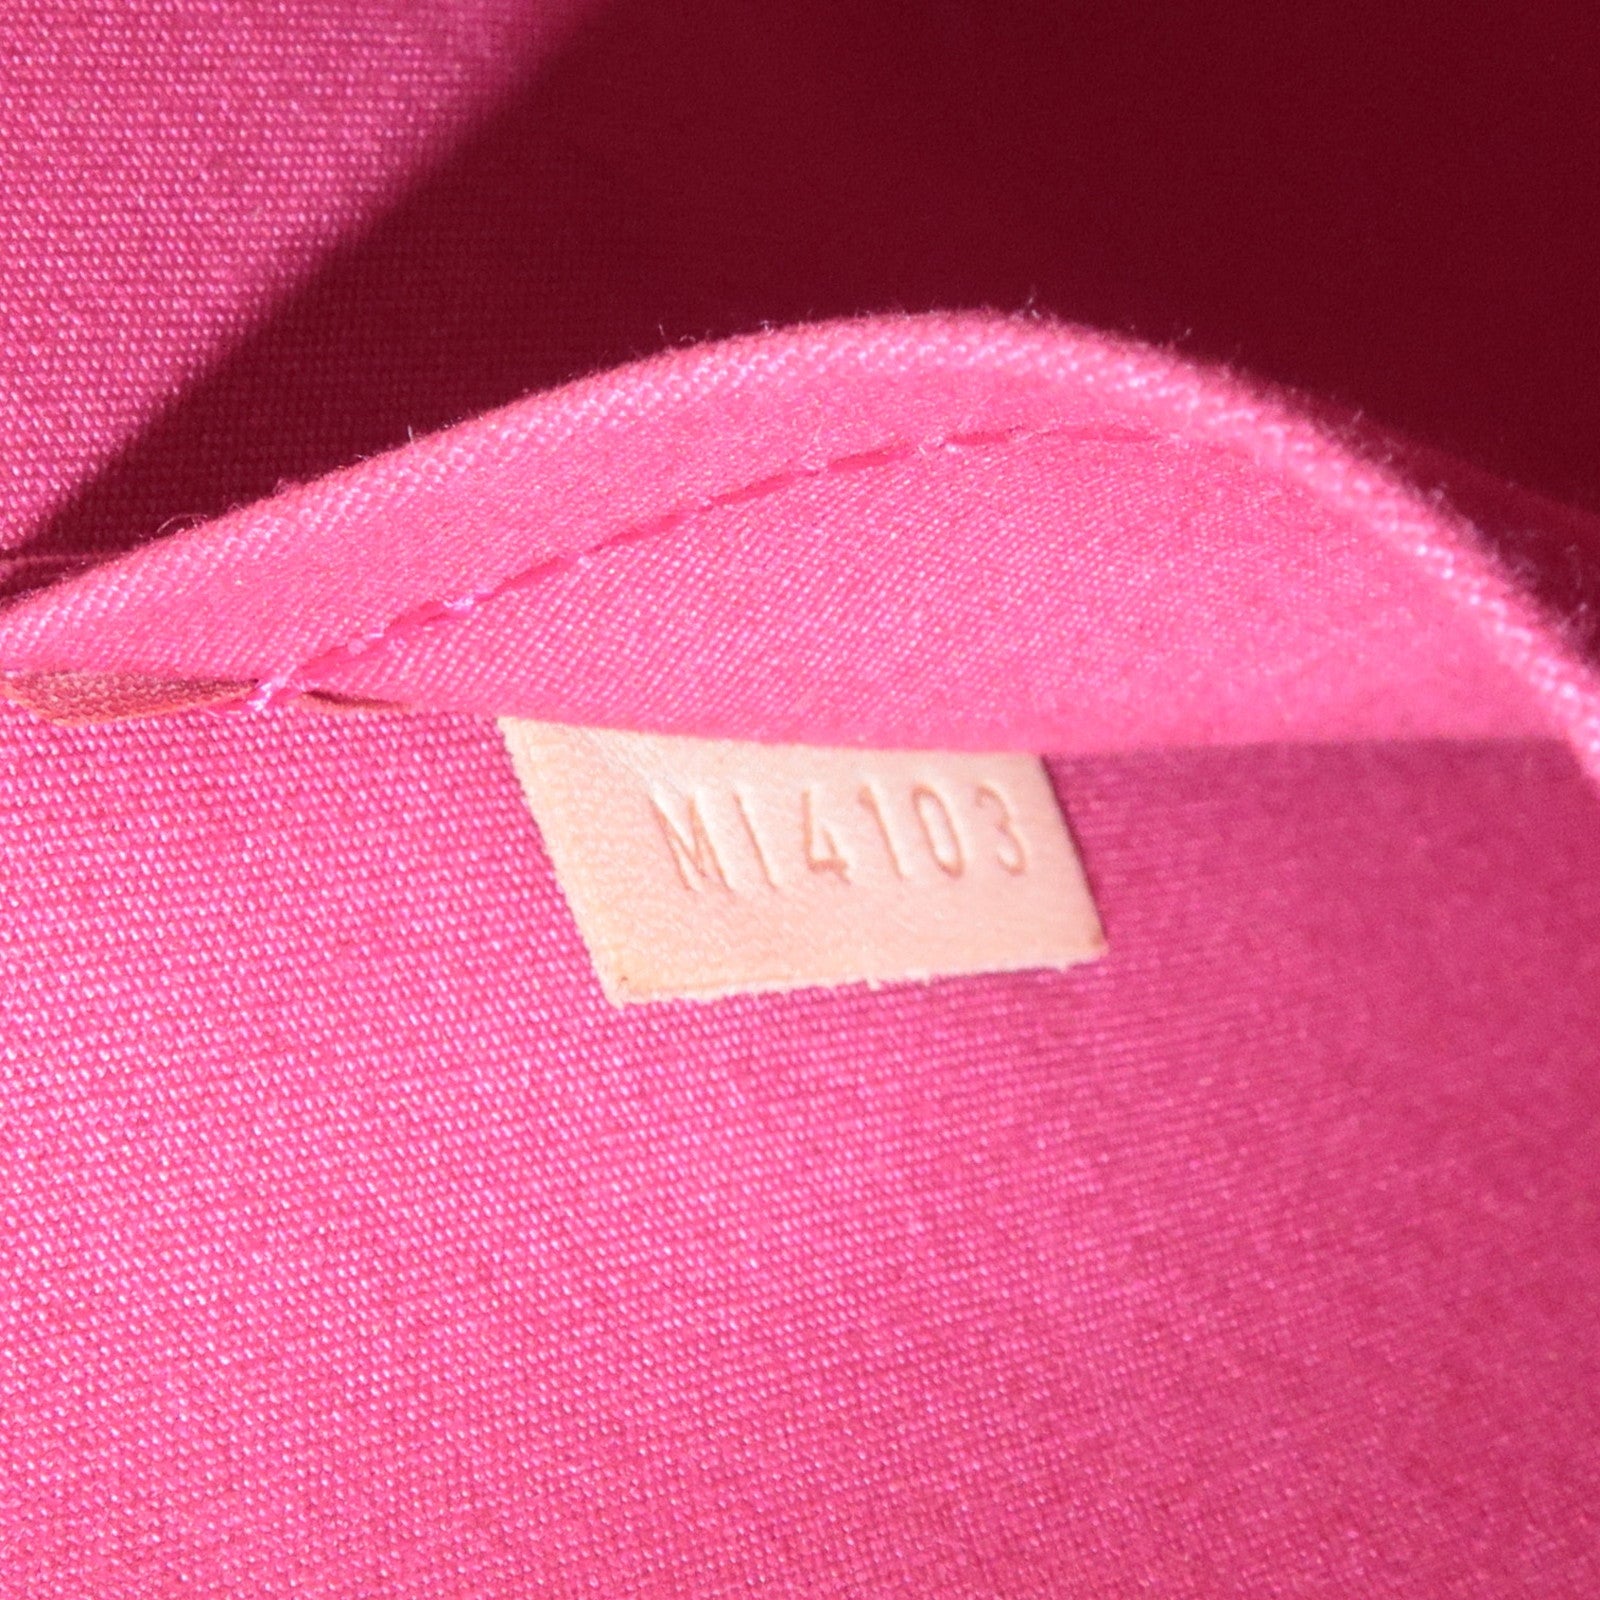 Louis Vuitton Pomme D'Amour Monogram Vernis Alma PM Bag